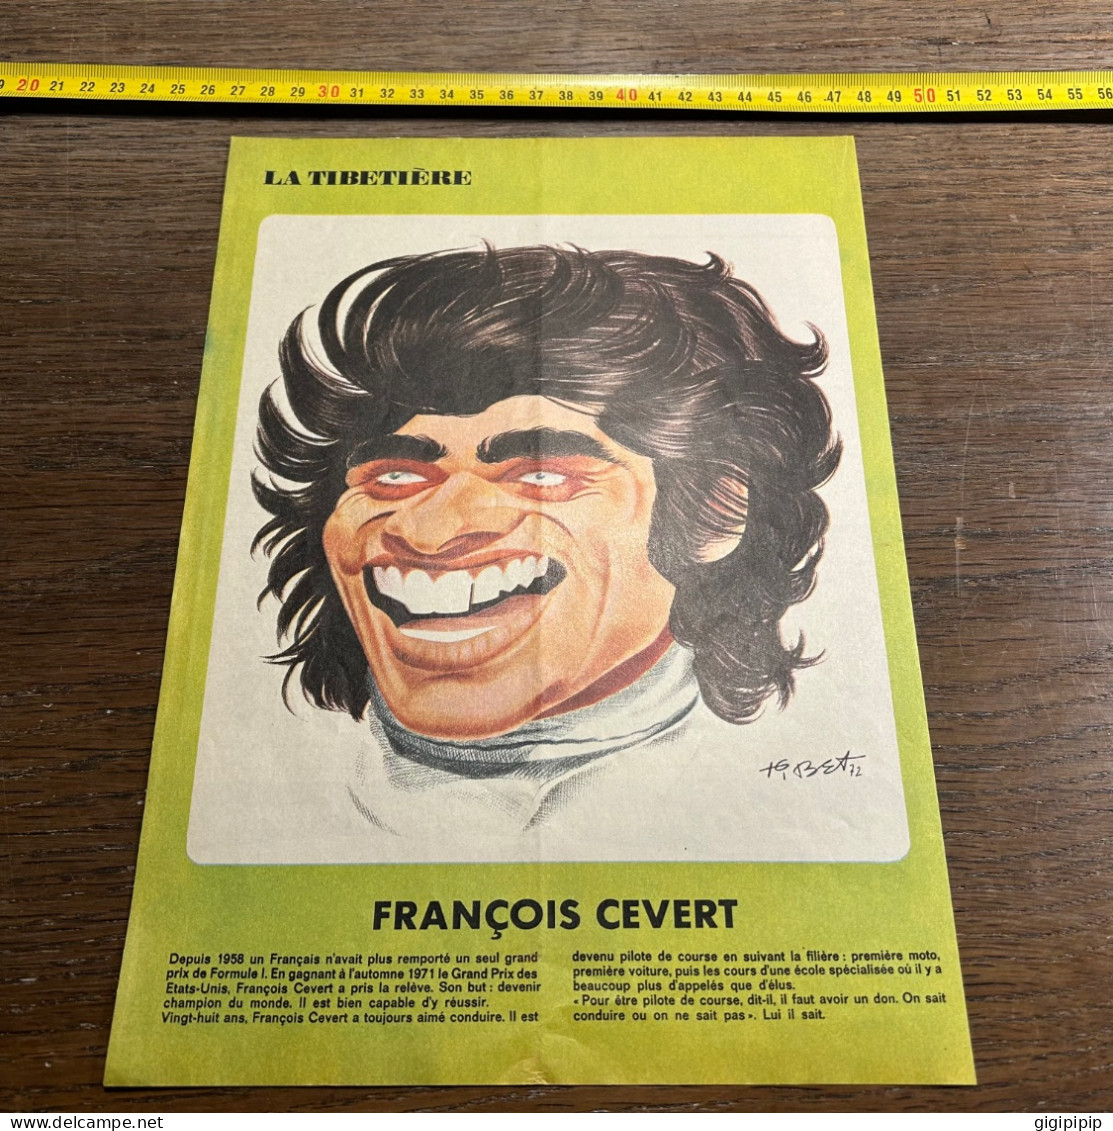 FRANCOIS CEVERT Portrait Caricature - Colecciones